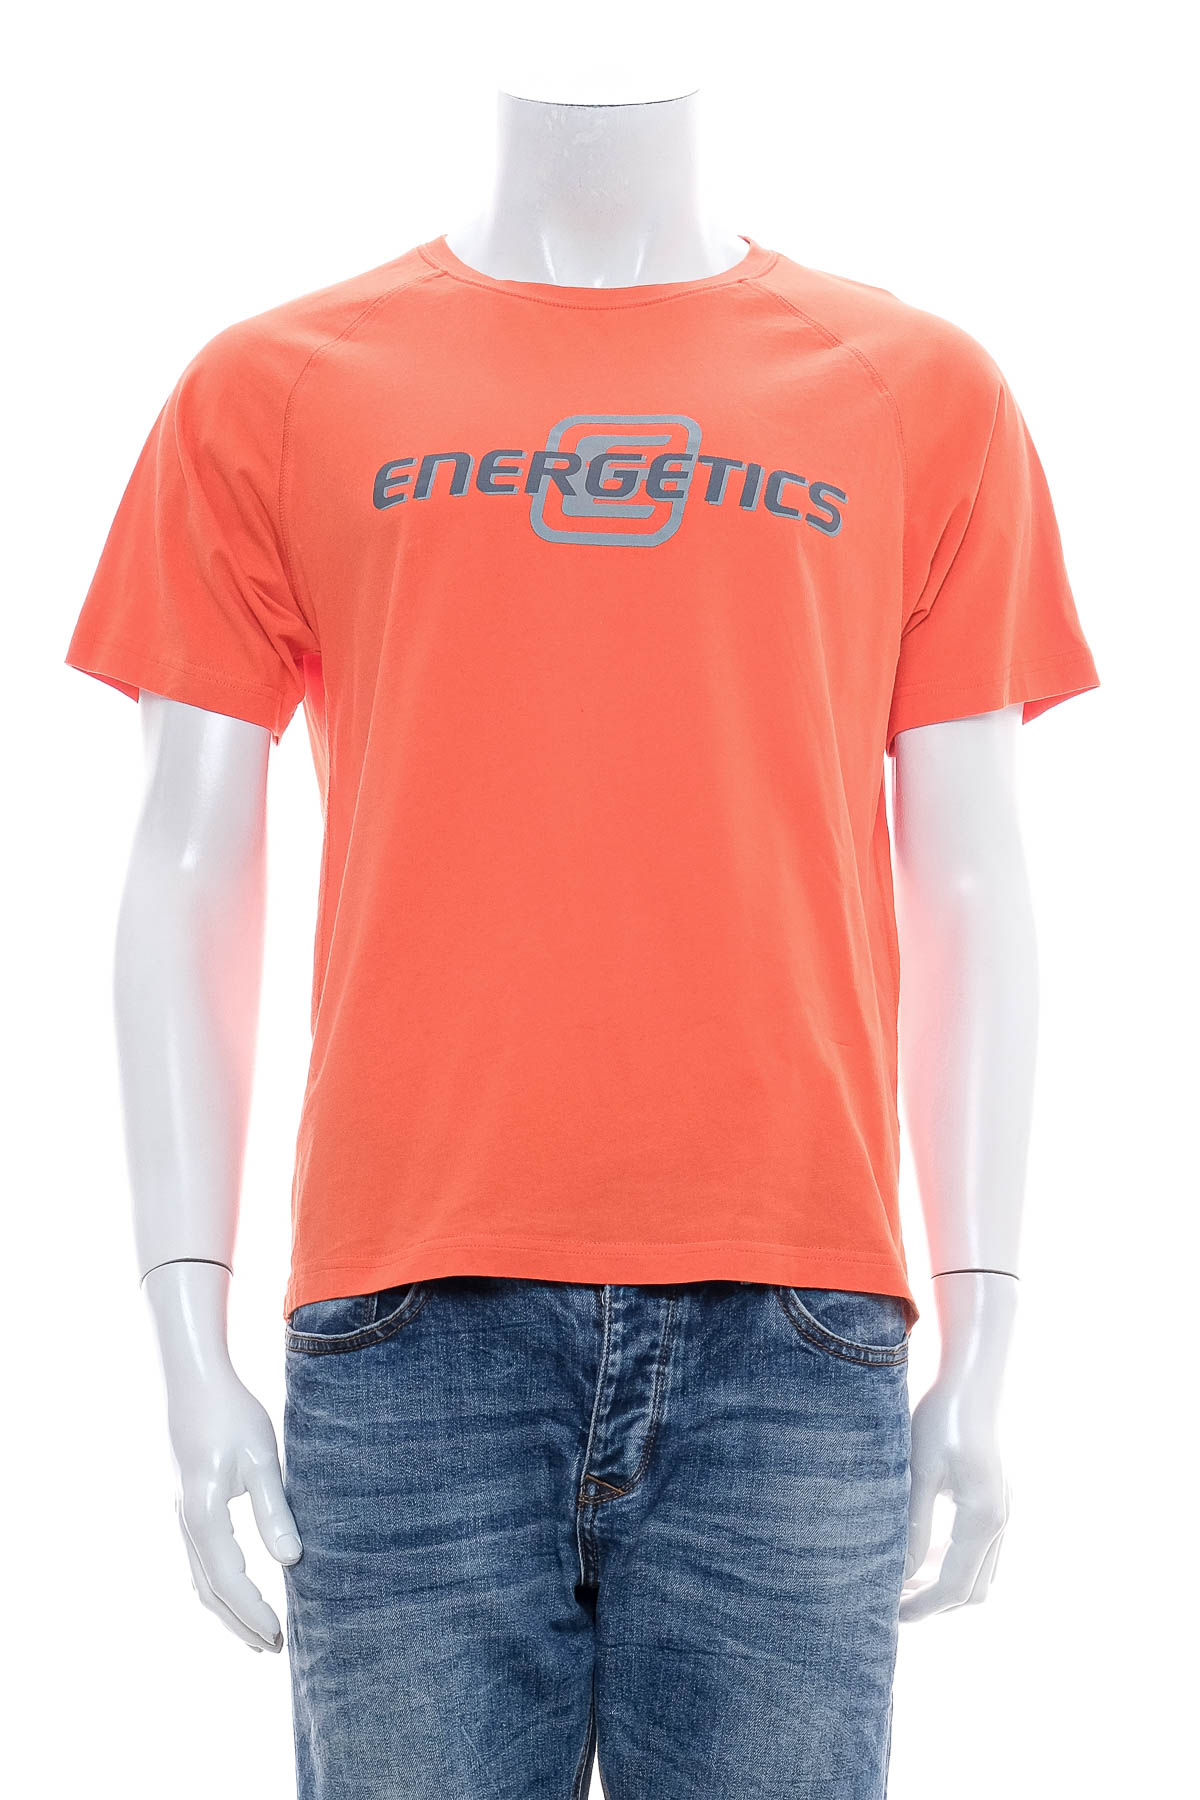 Αντρική μπλούζα - Energetics - 0